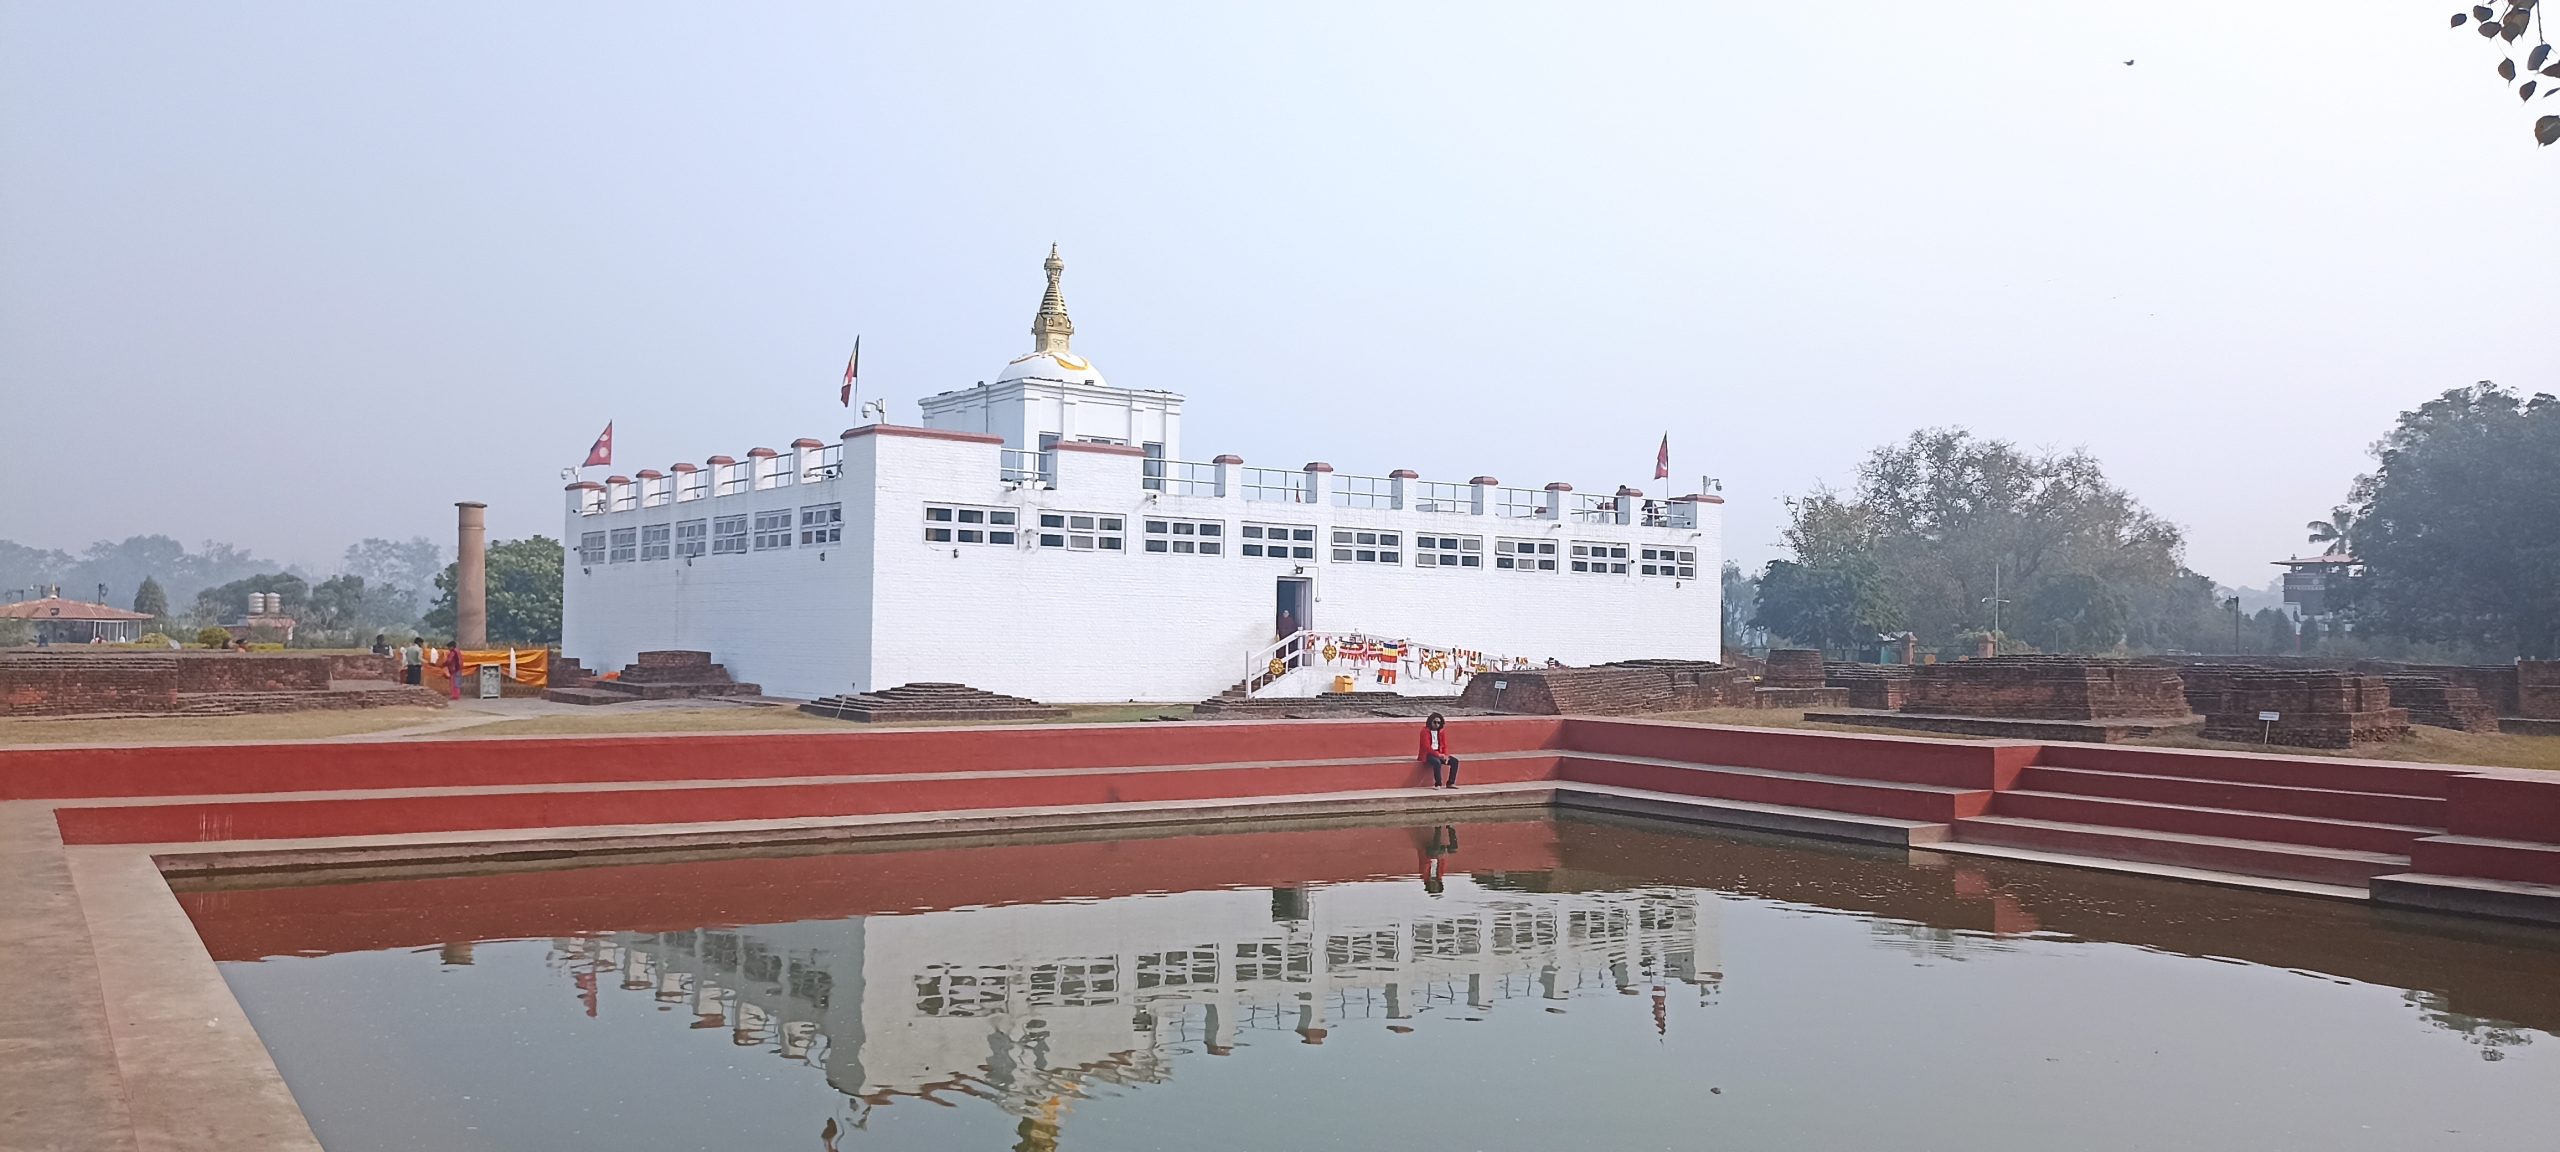 शान्ति र आनन्द प्राप्तिका लागि लुम्बिनी घुमौं